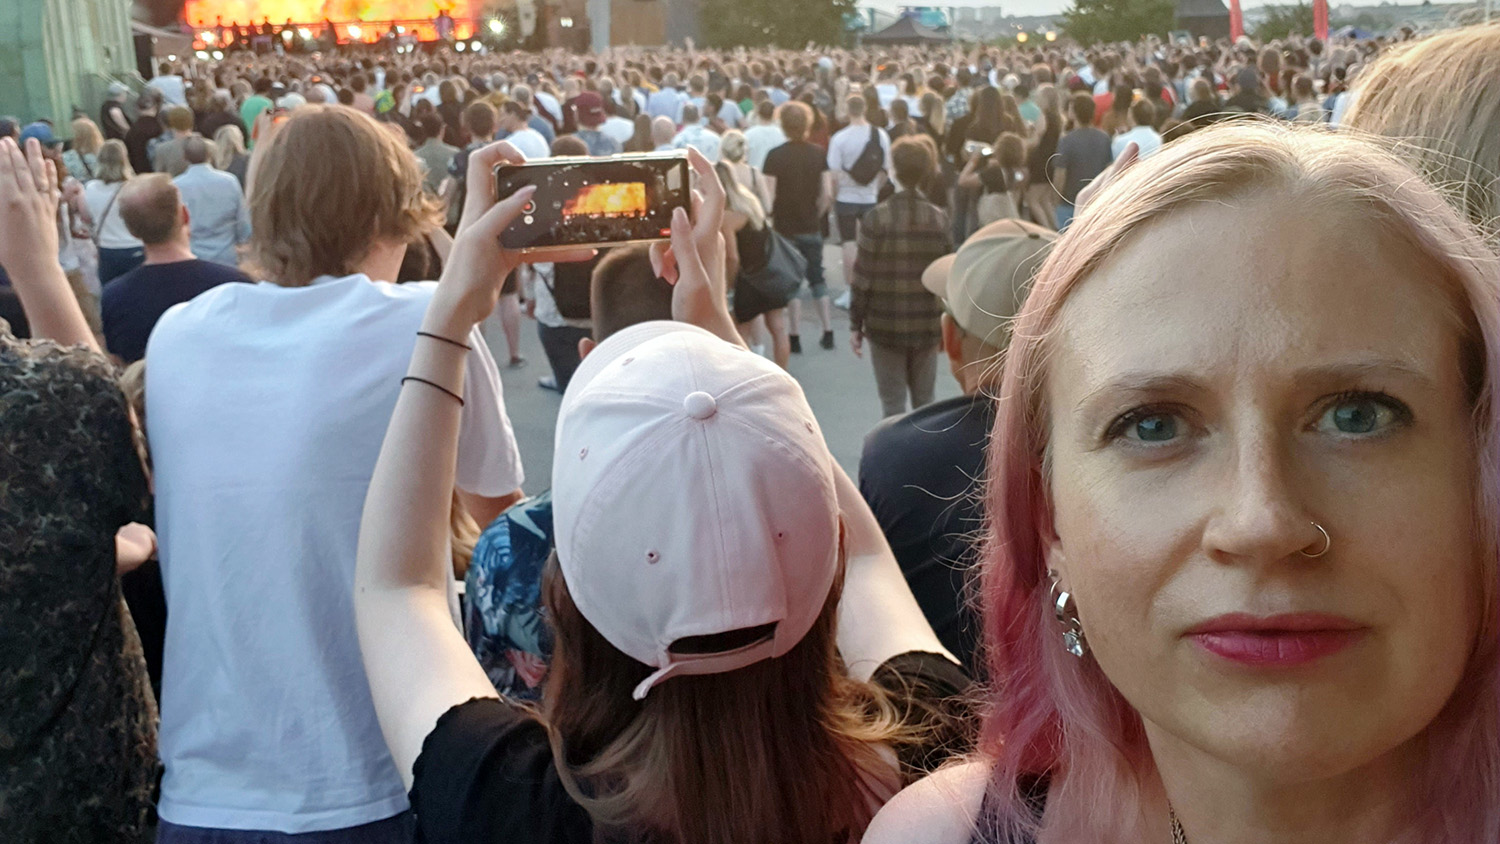 Kvinna med rosafärgat hår tittar in i kameran. I bakgrunden en utomhusscen där det pågår en konsert.